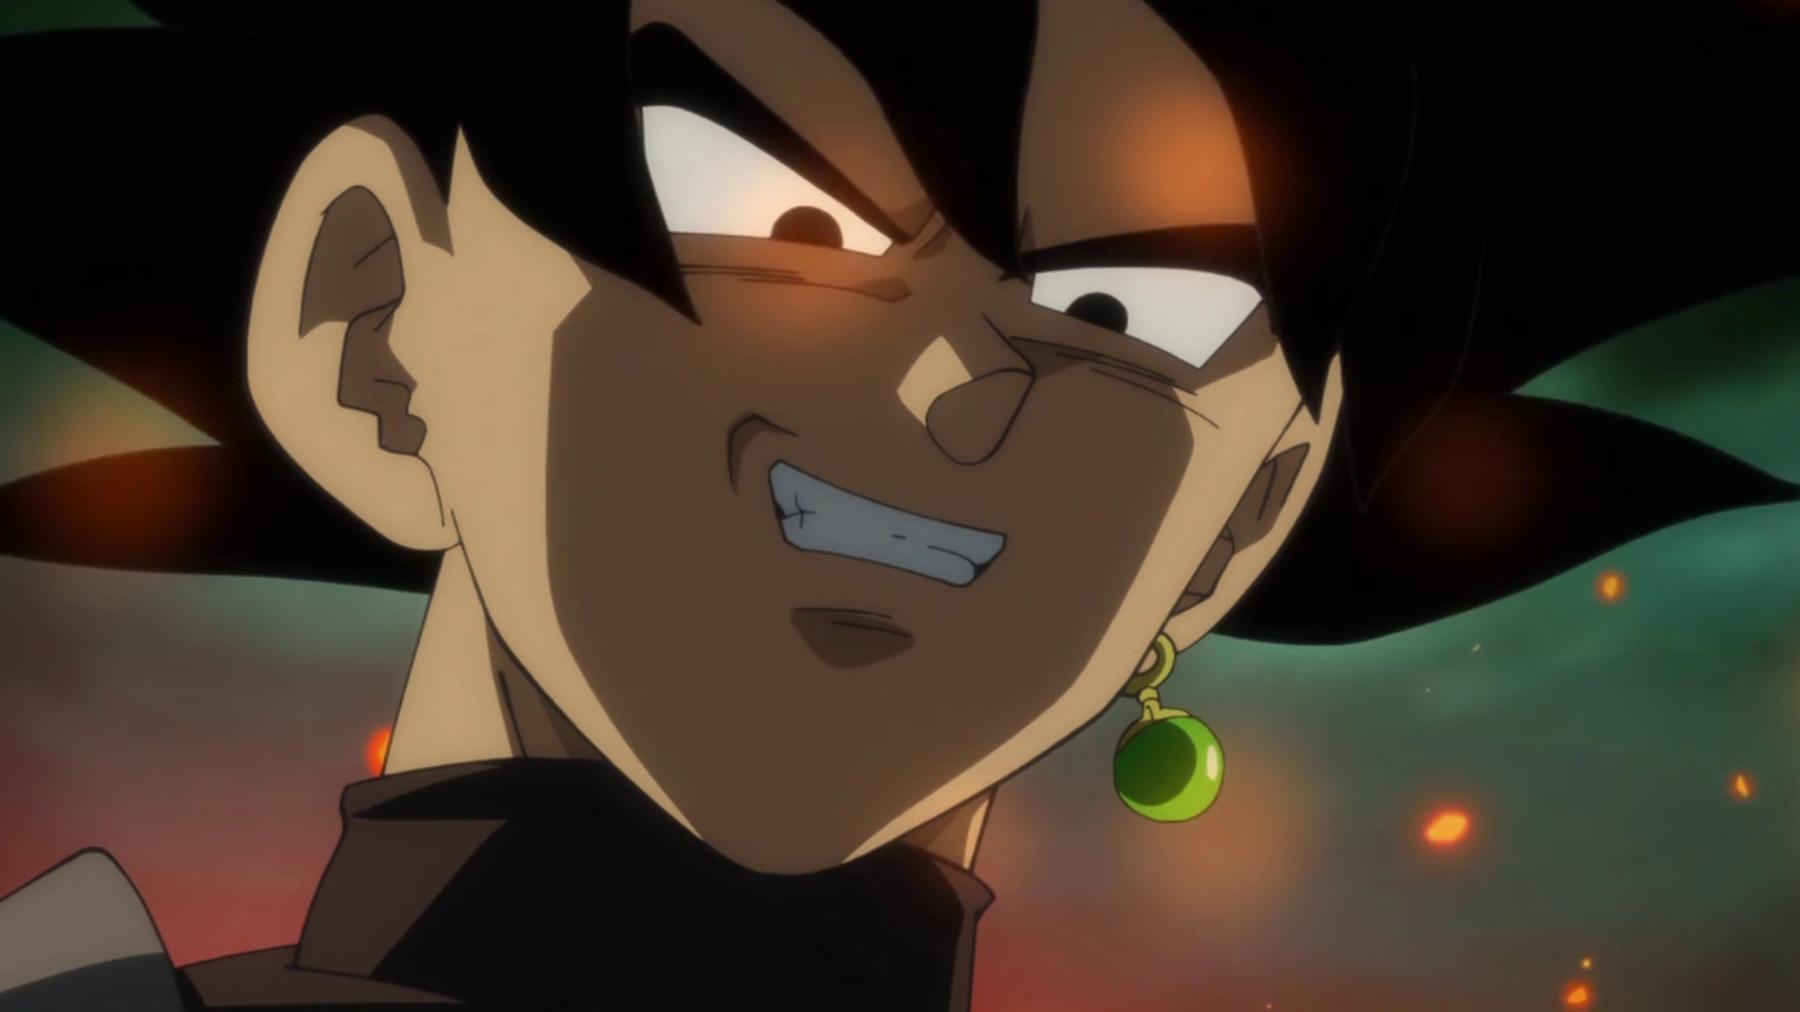 Dragon Ball Z también tendría un Goku Black